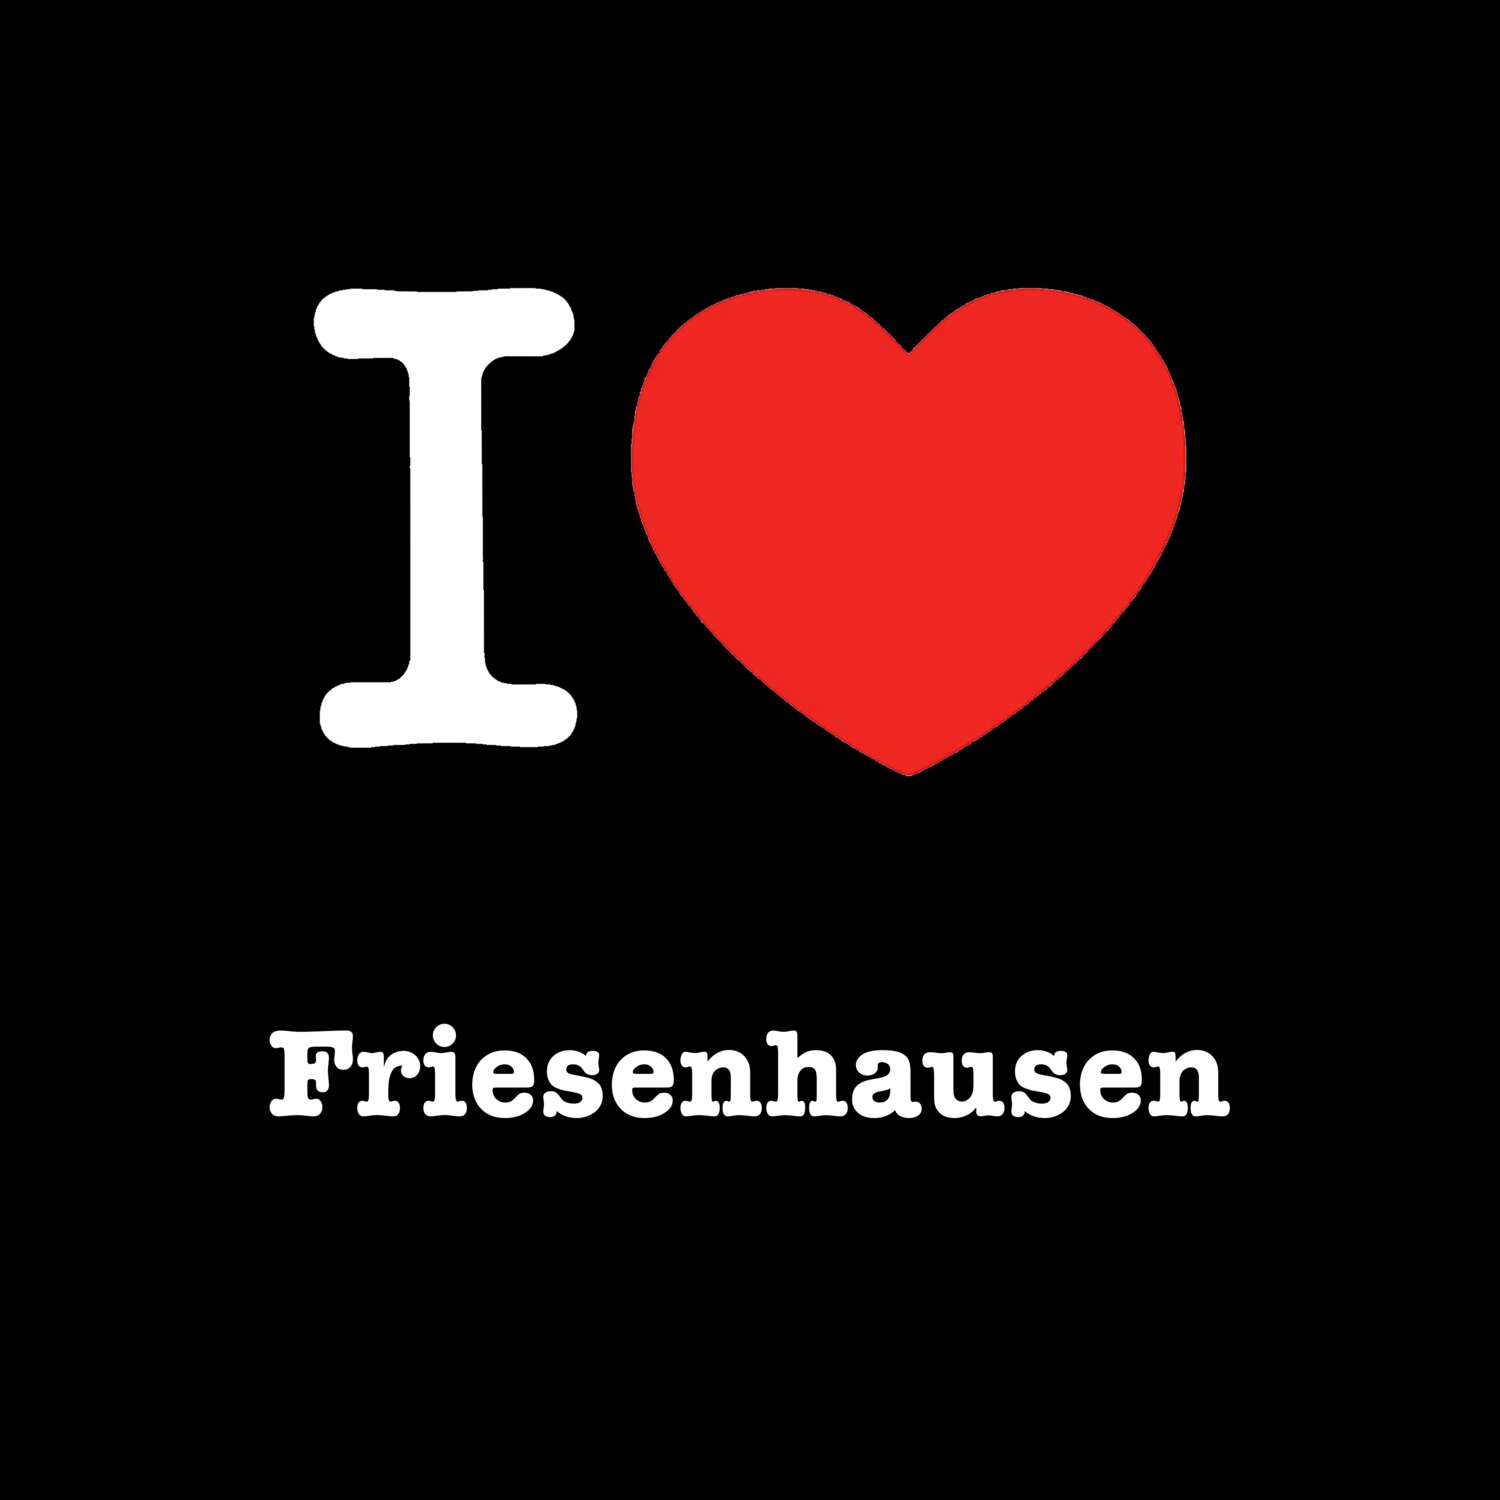 Friesenhausen T-Shirt »I love«